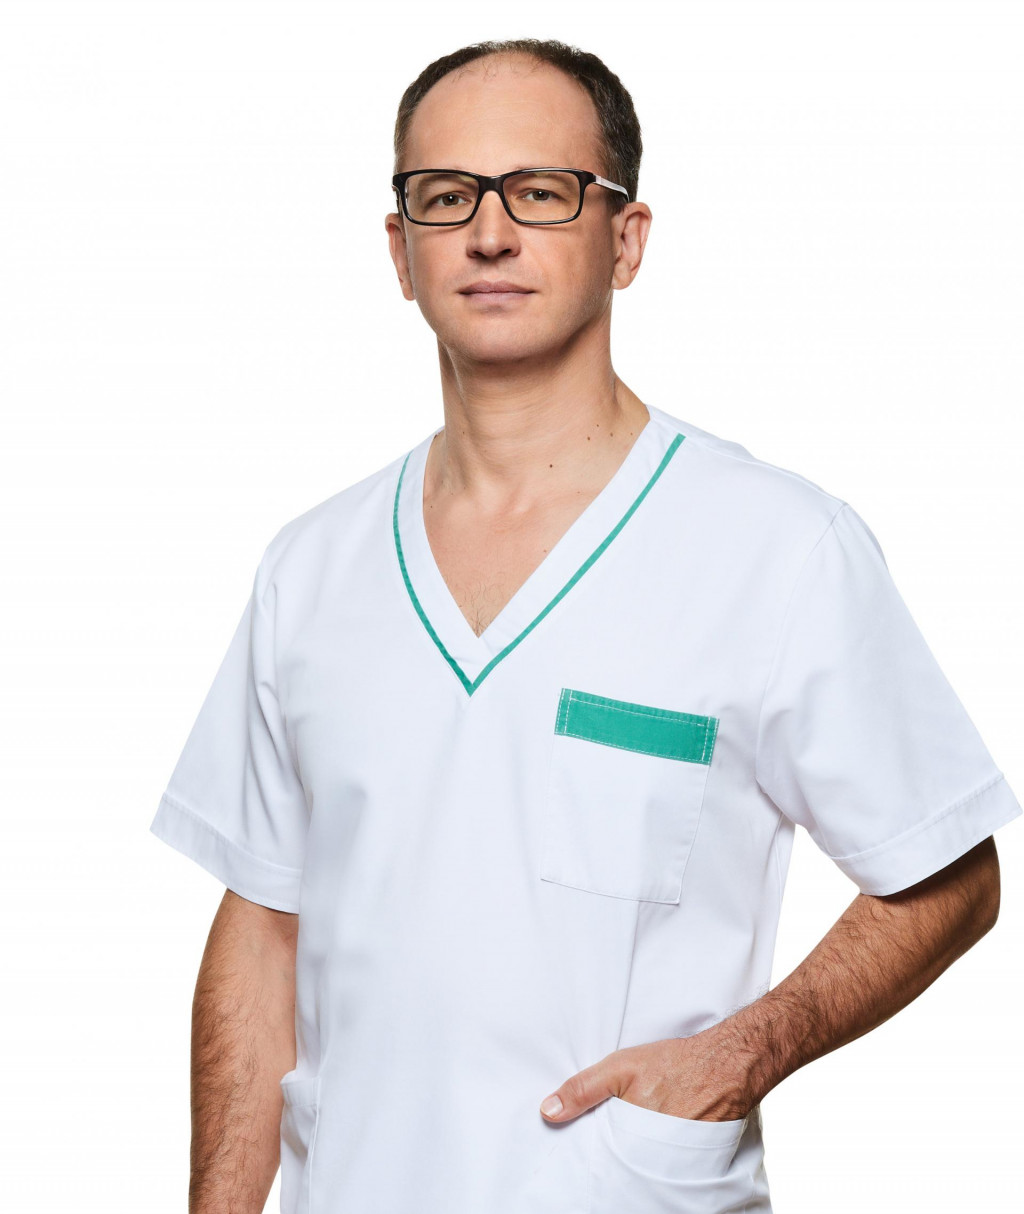 &lt;p&gt;MUDr. Maroš Eľko primár oddelenia úrazovej chirurgie, Nemocnica Svet zdravia Michalovce&lt;/p&gt;